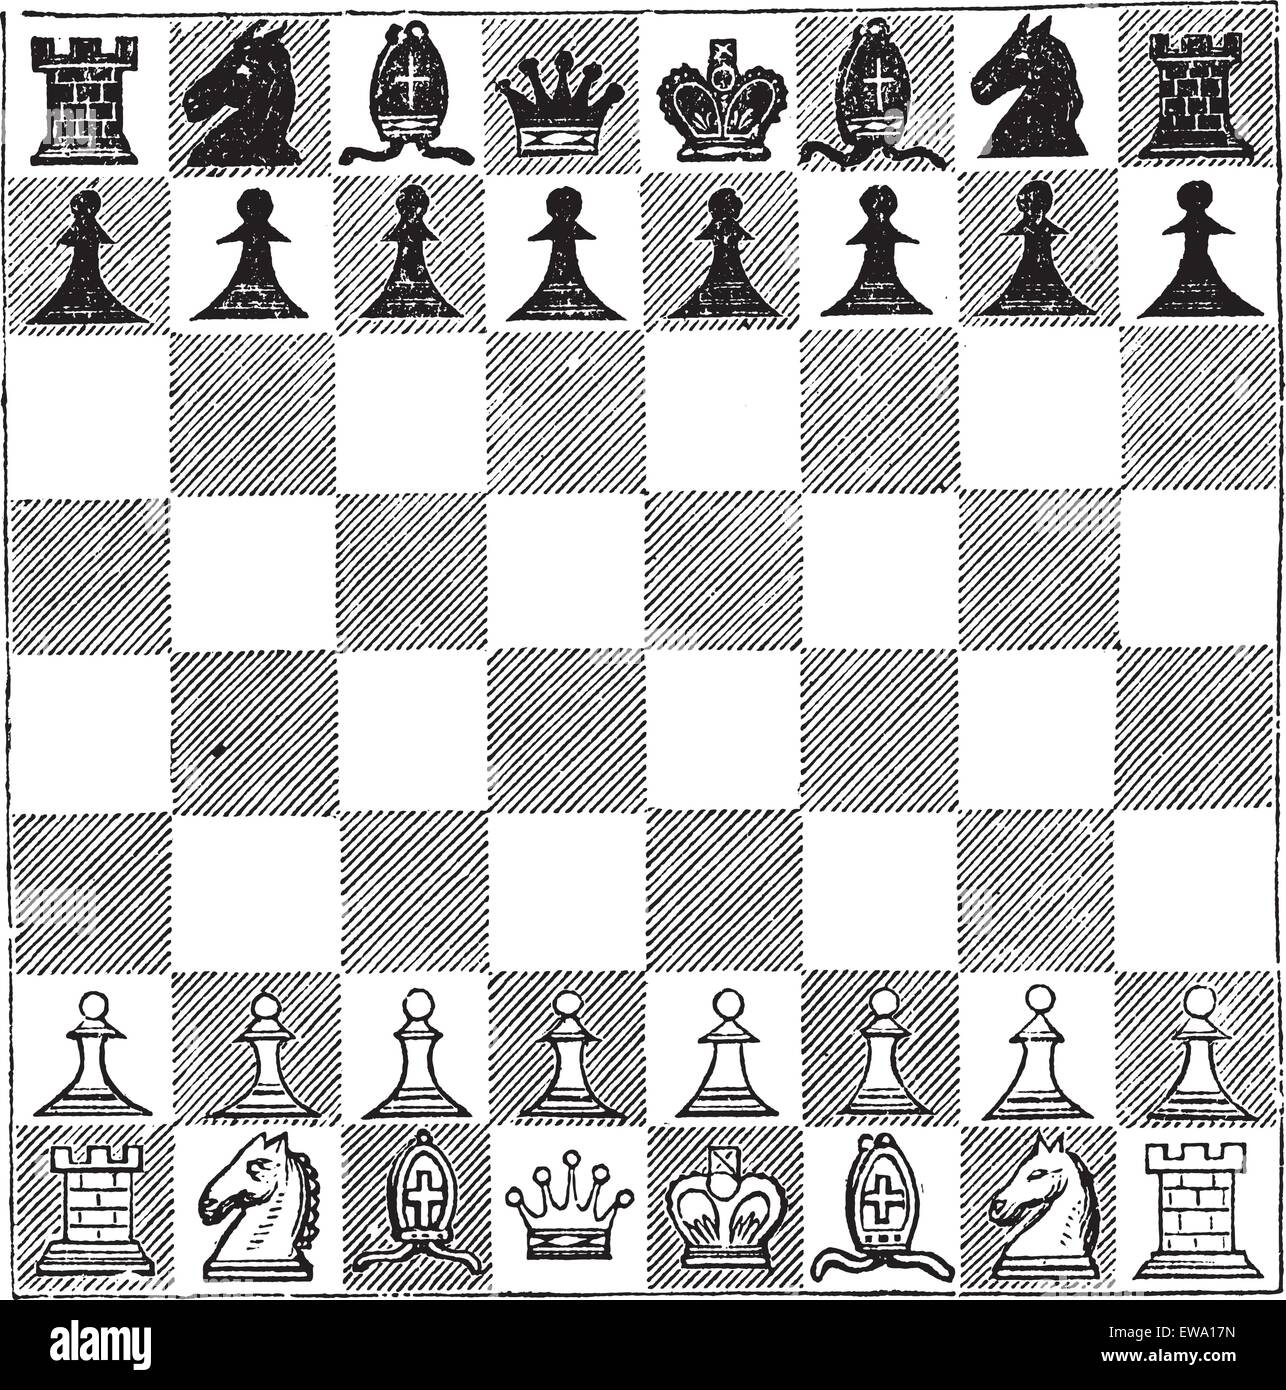 Schach, Vintage-Gravur. Alten gravierten Abbildung des Schachspiels zeigt Figuren auf einem Schachbrett angeordnet. Stock Vektor